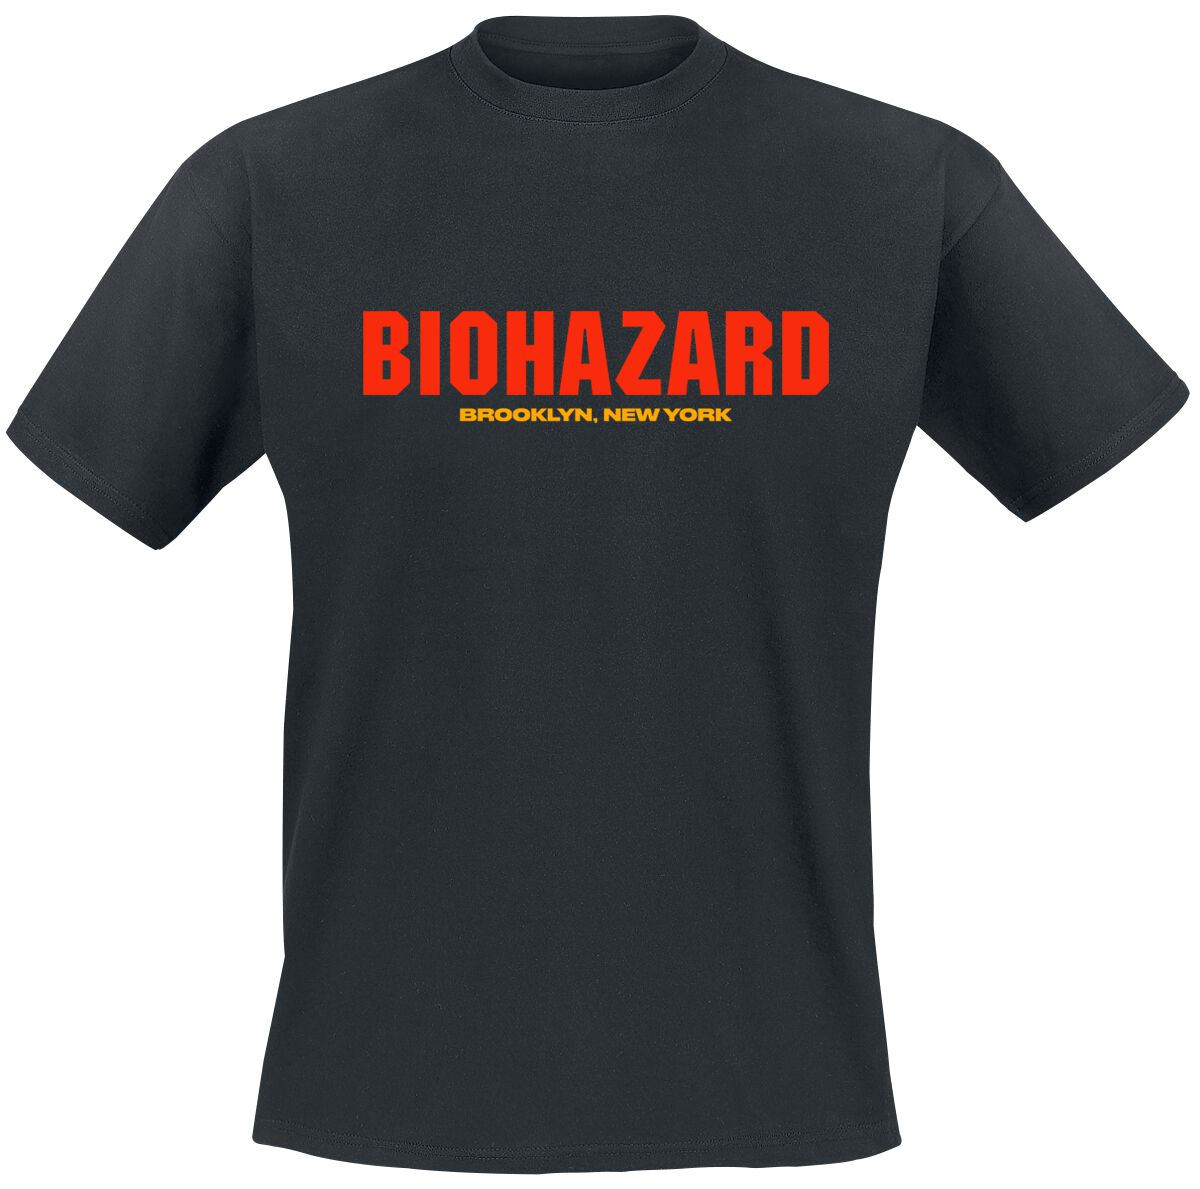 Biohazard T-Shirt - Urban discipline - S bis 4XL - für Männer - Größe M - schwarz  - Lizenziertes Merchandise!